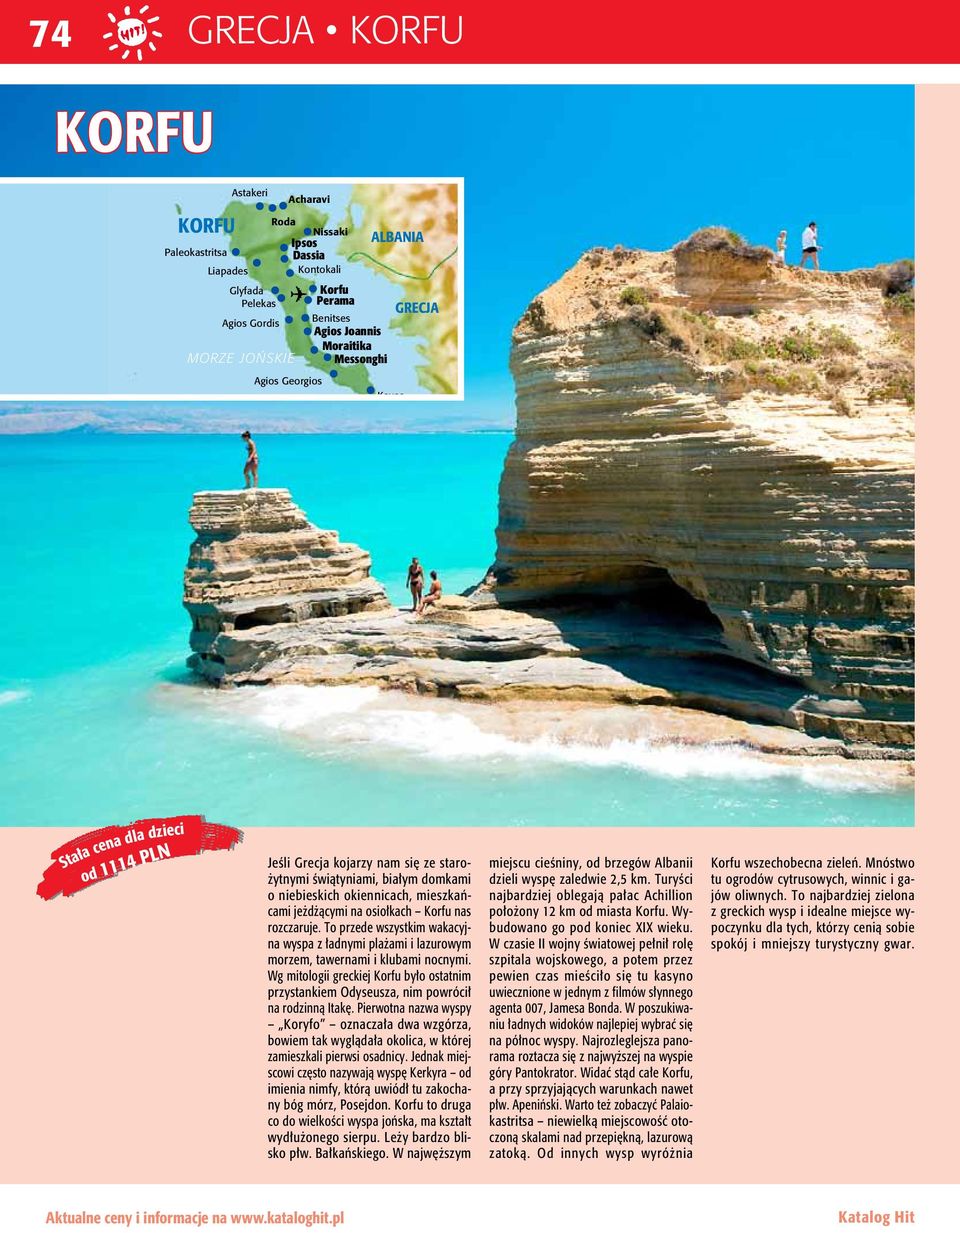 jeżdżącymi na osiołkach Korfu nas rozczaruje. To przede wszystkim wakacyjna wyspa z ładnymi plażami i lazurowym morzem, tawernami i klubami nocnymi.